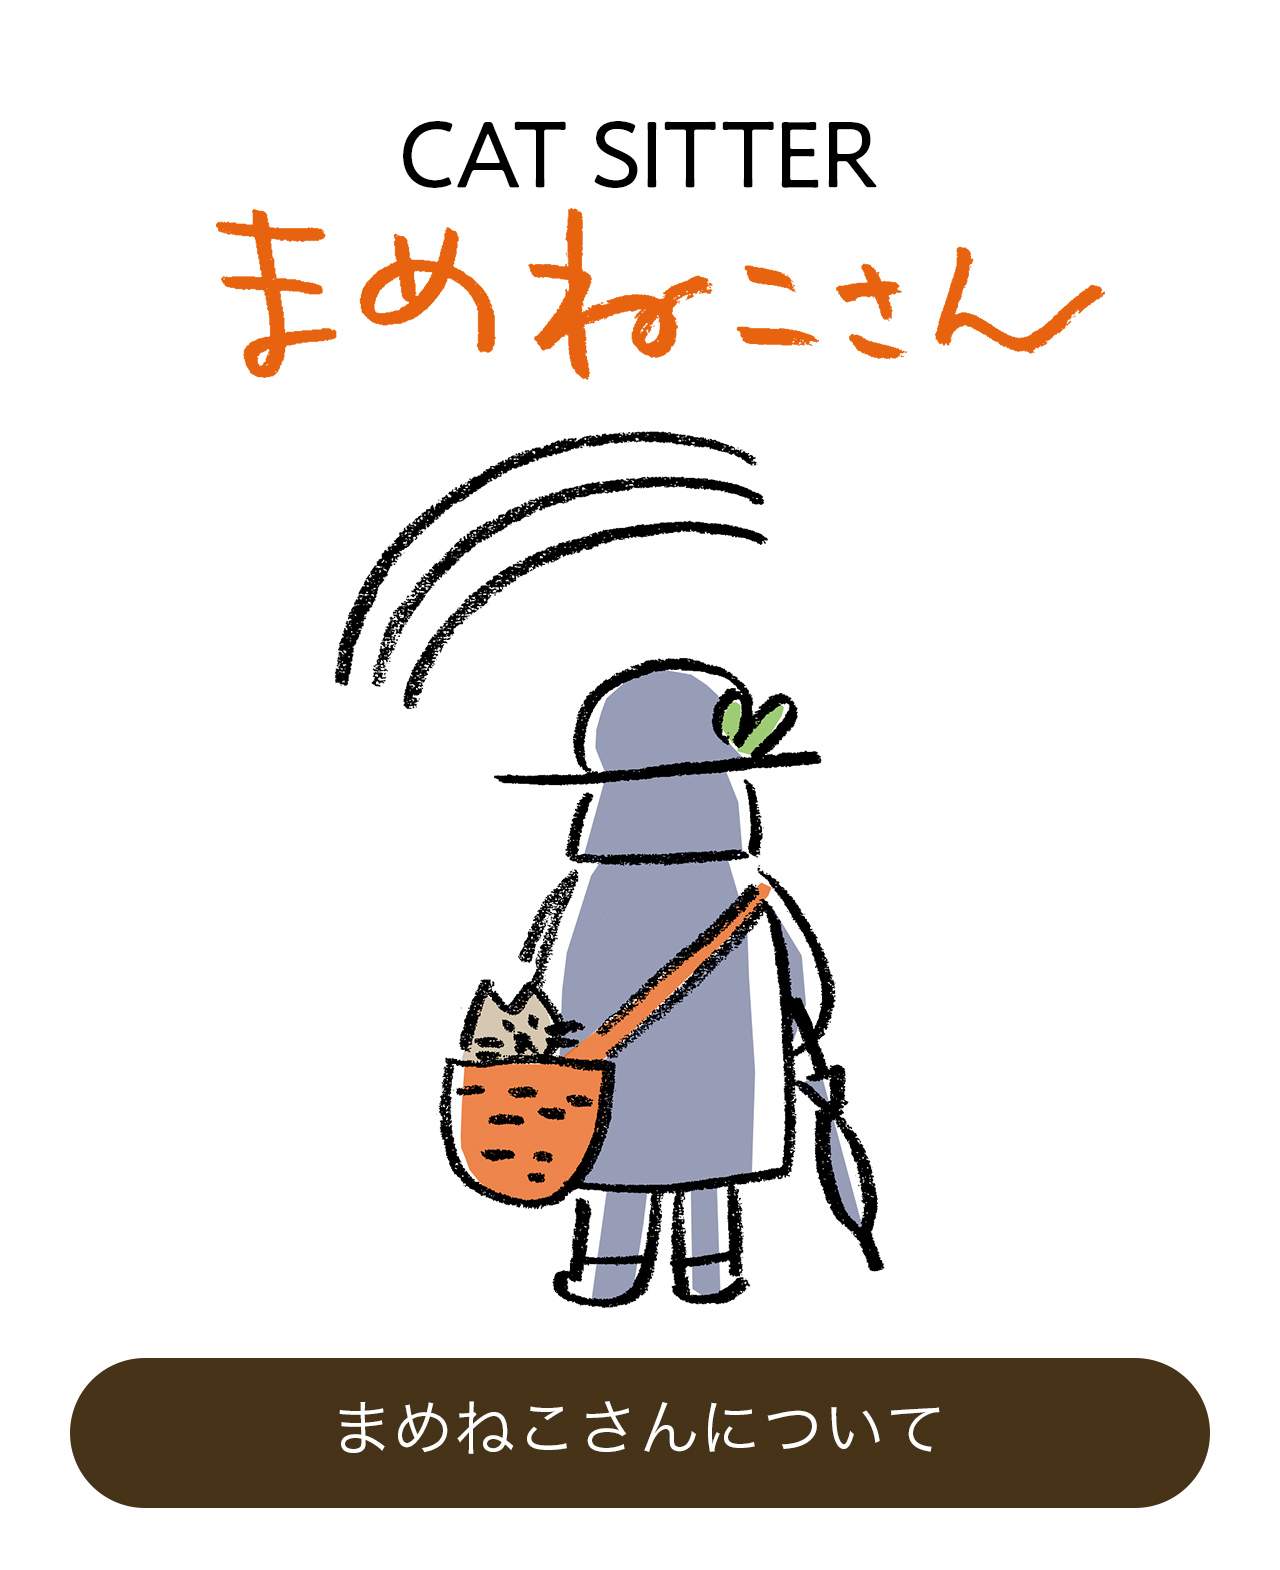 まめねこさんについて｜キャットシッターまめねこさん CAT SITTER